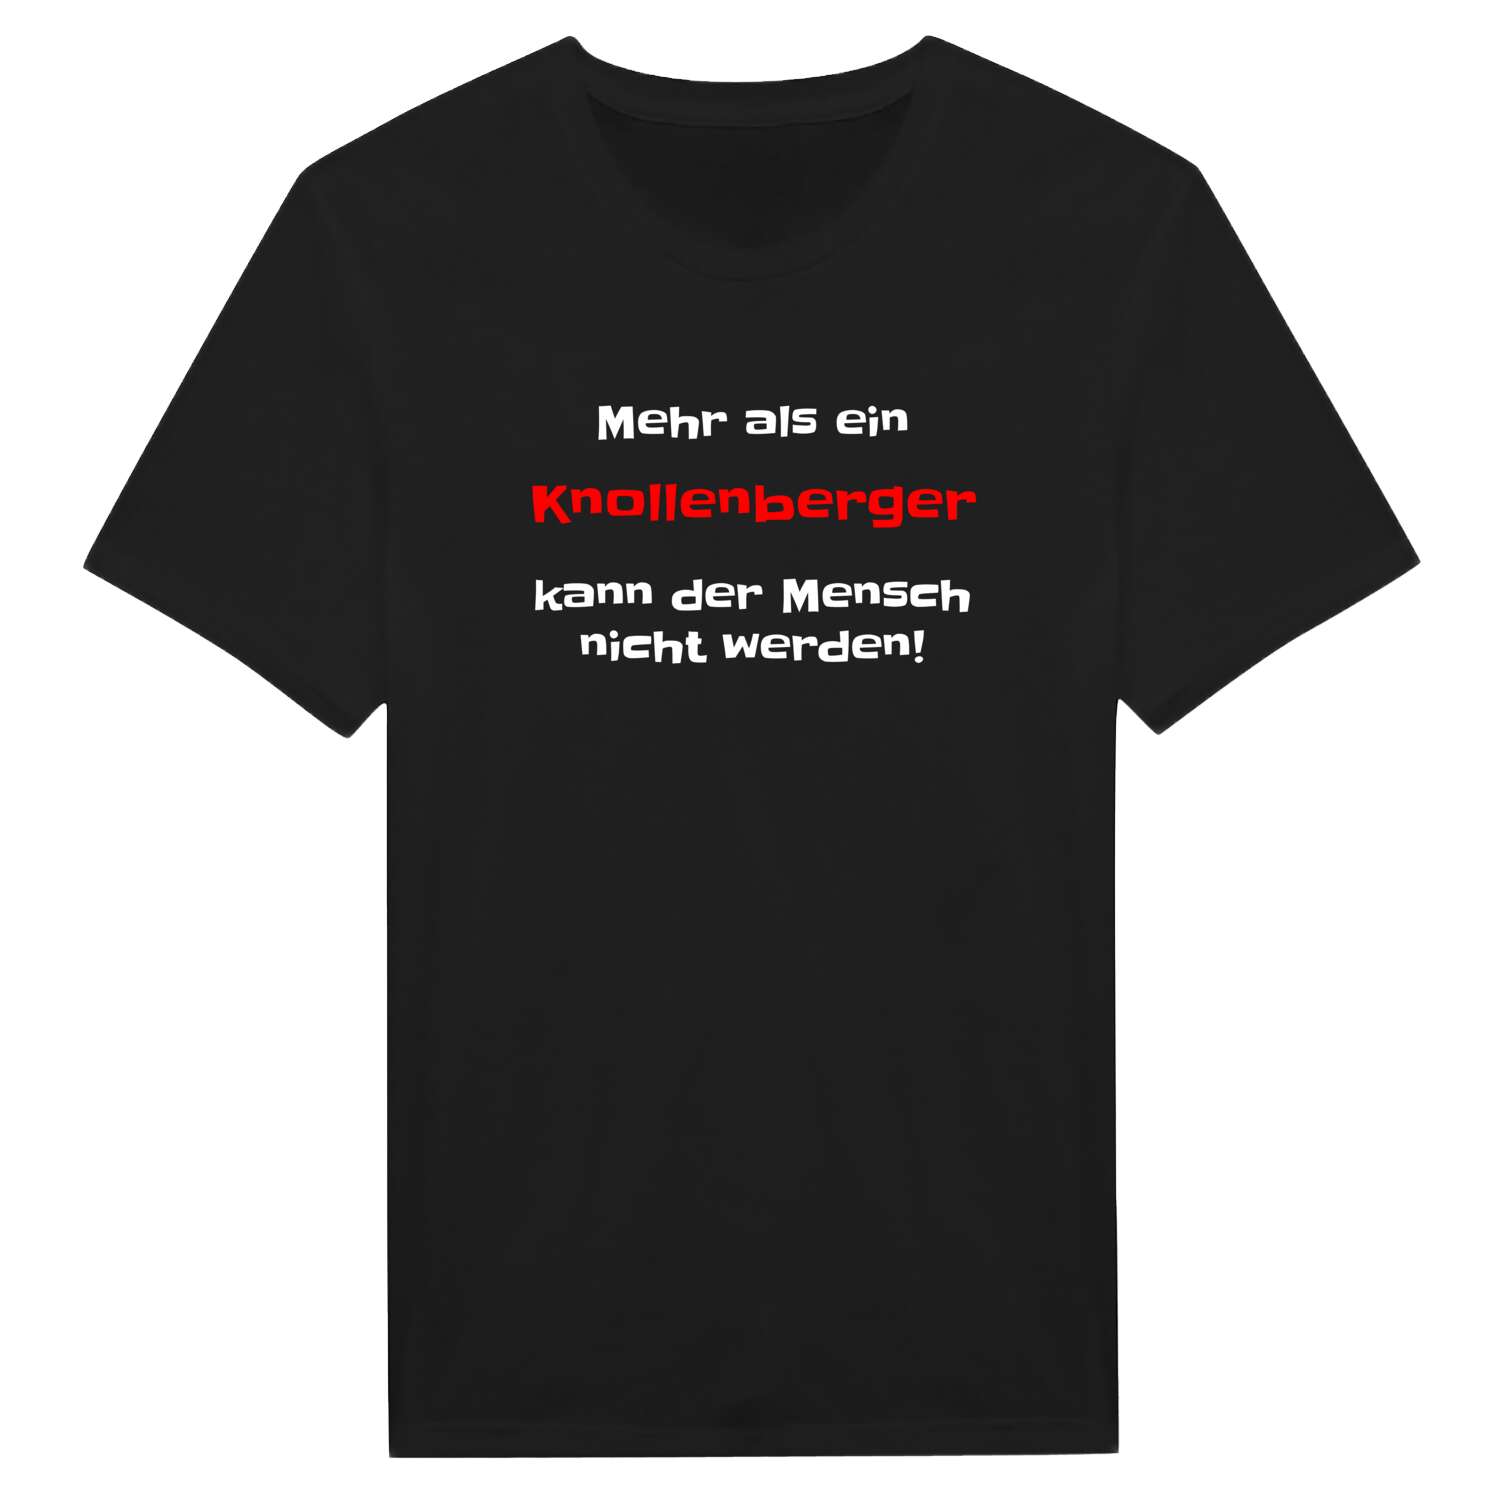 Knollenberg T-Shirt »Mehr als ein«